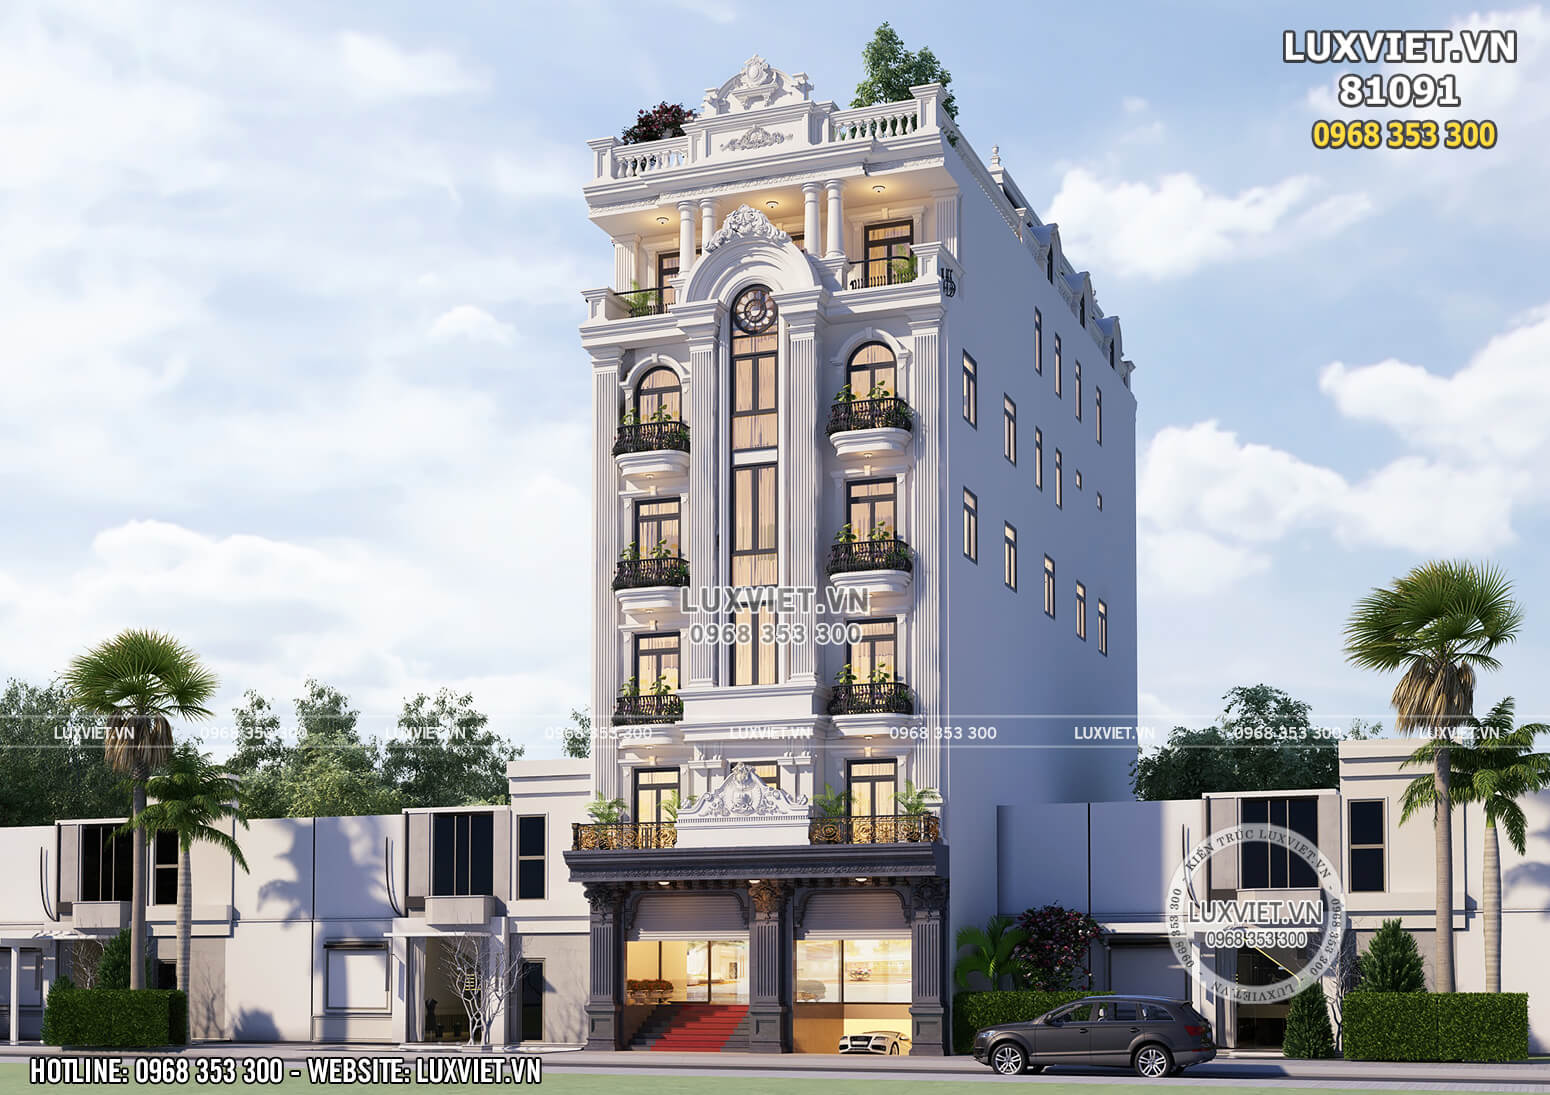 Thiết kế tòa nhà kinh doanh 7 tầng mặt tiền 10m - Mã số: LV 81091